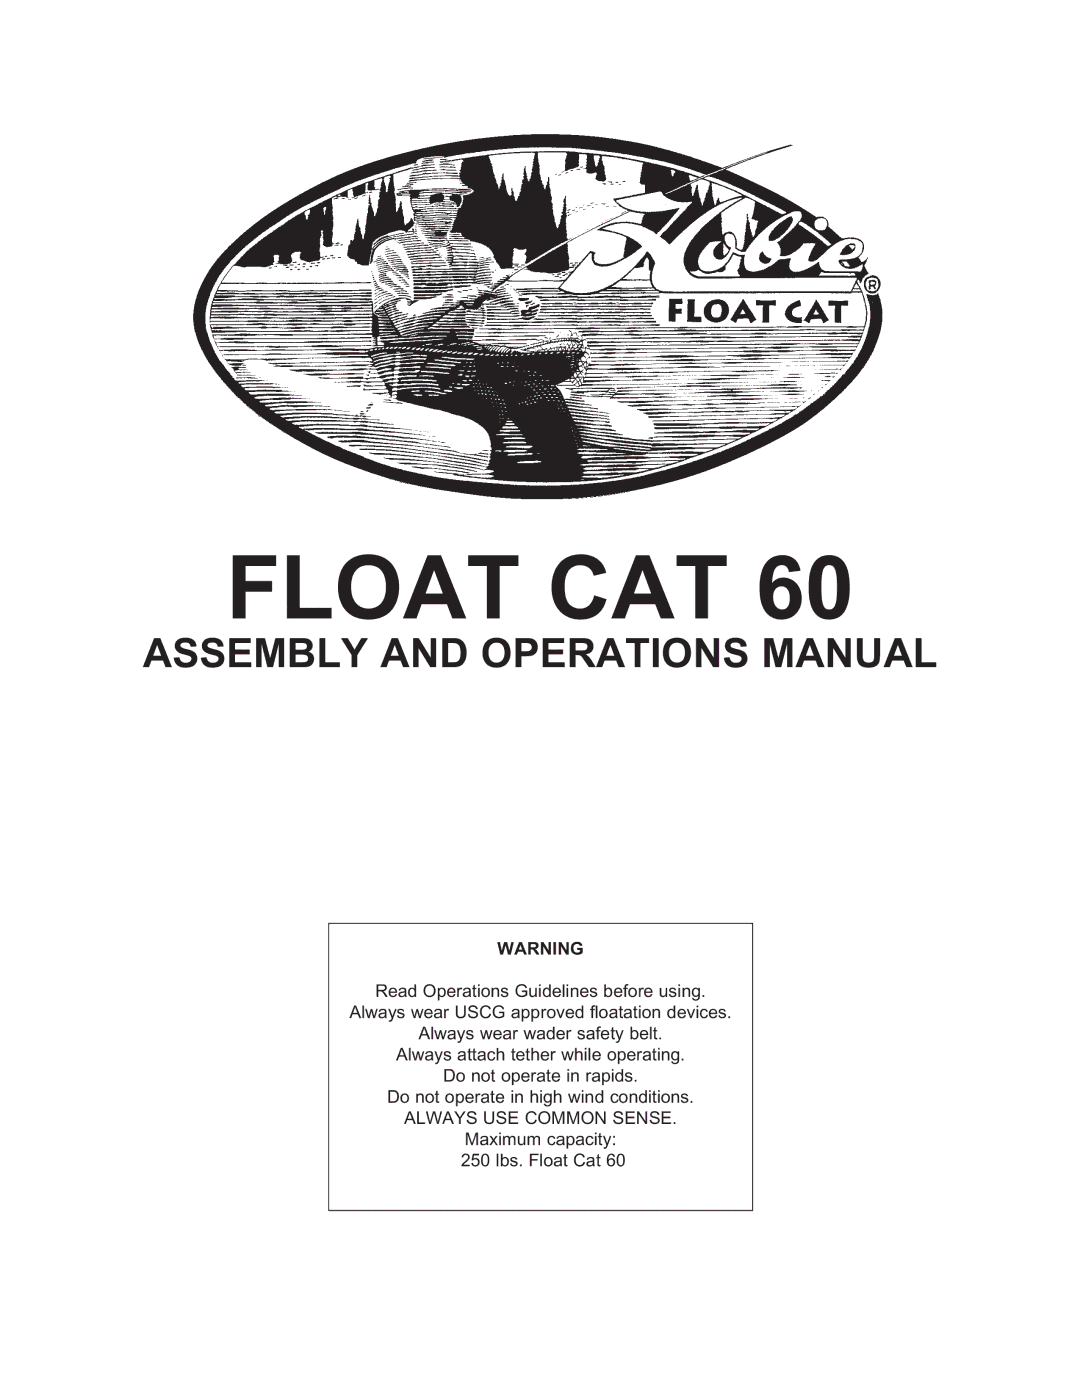 Hobie 60 manual Float CAT 